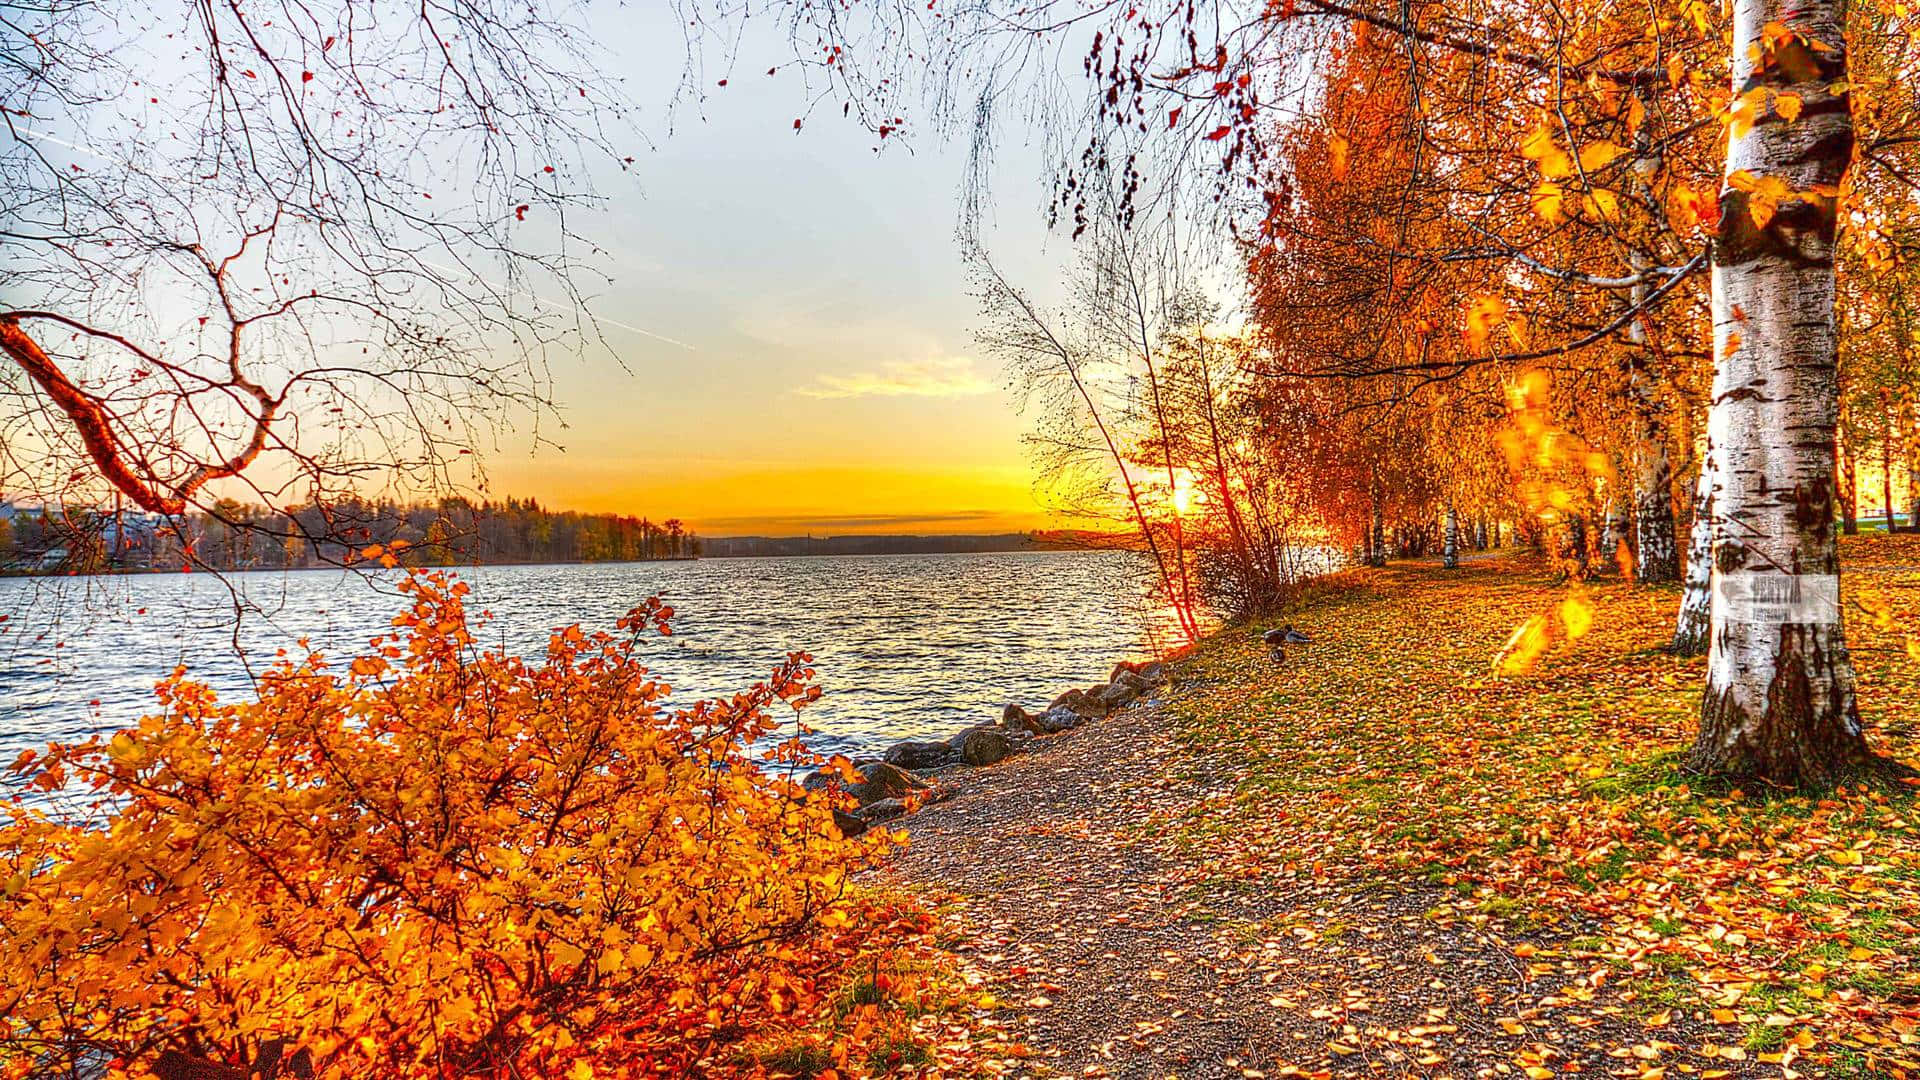 An idyllic fall landscape by the lake Wallpaper